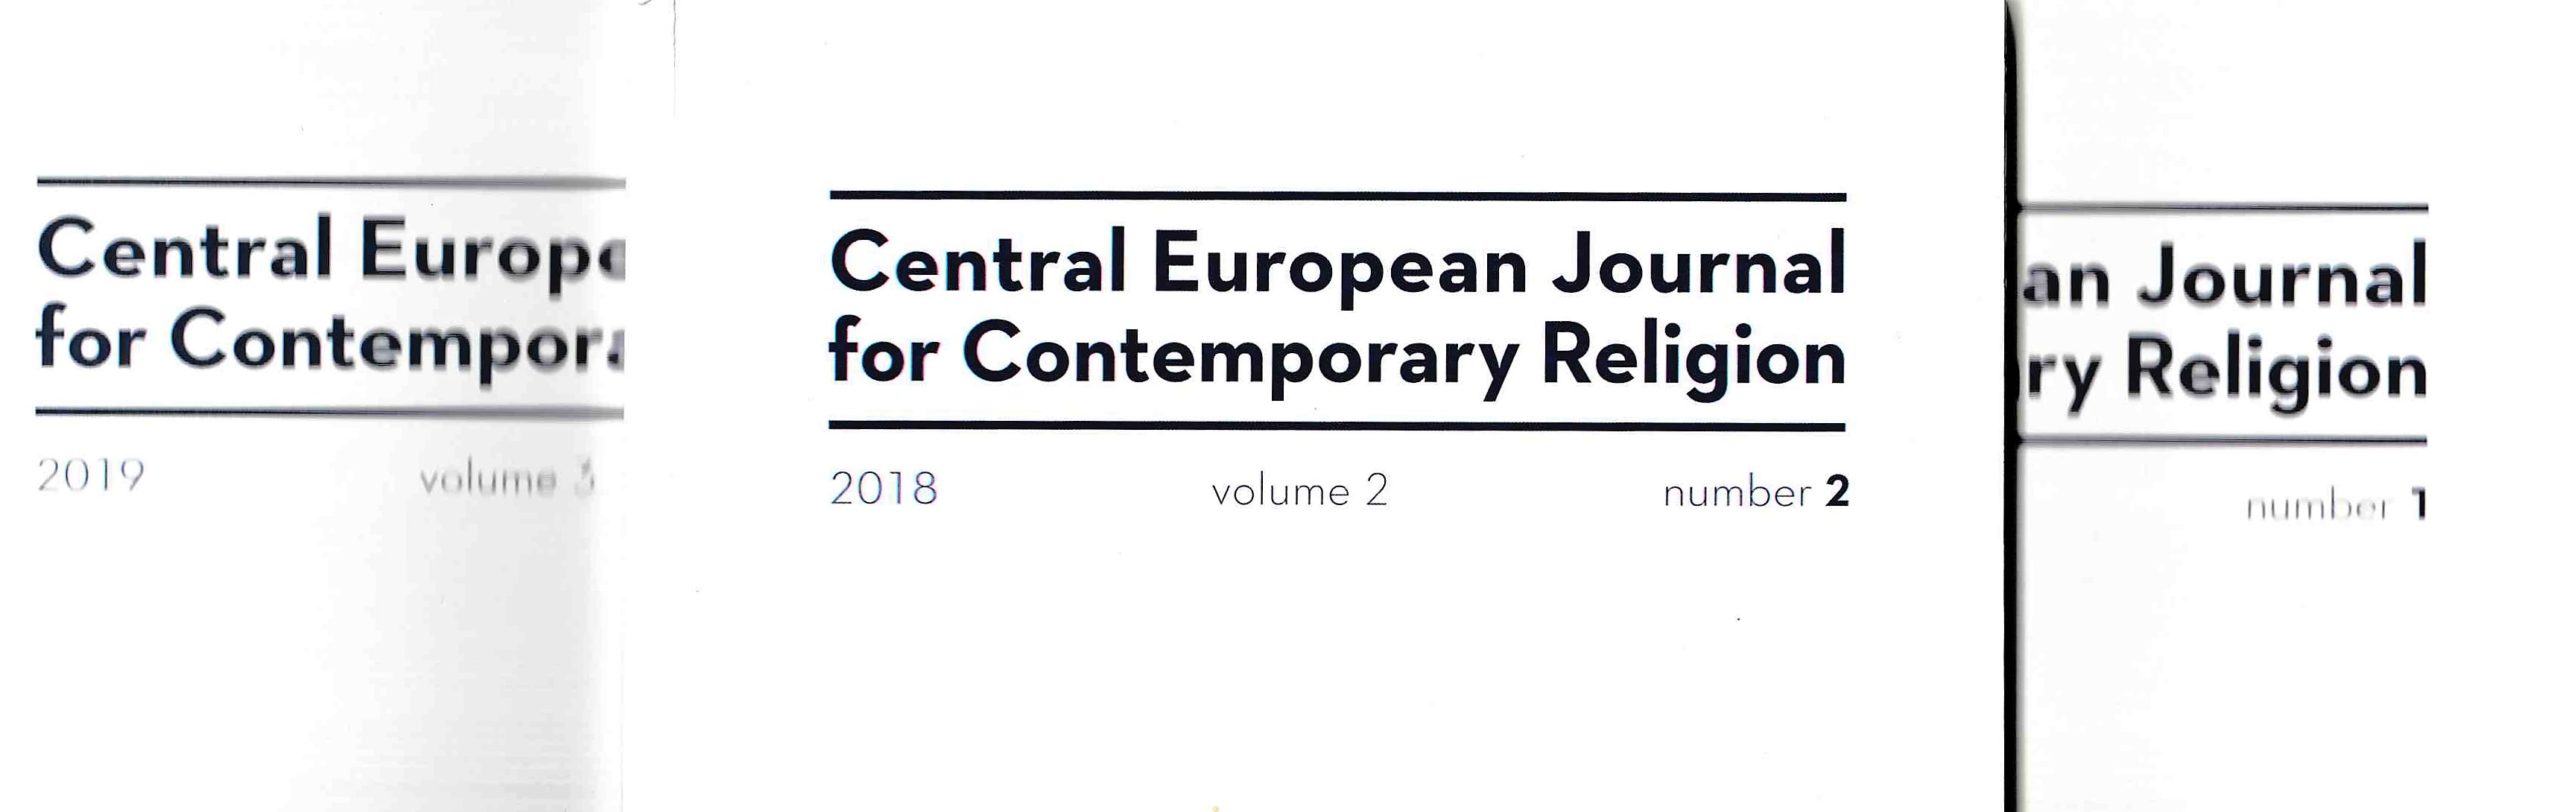 Časopis CEJCR: O současném náboženství ve středoevropském regionu